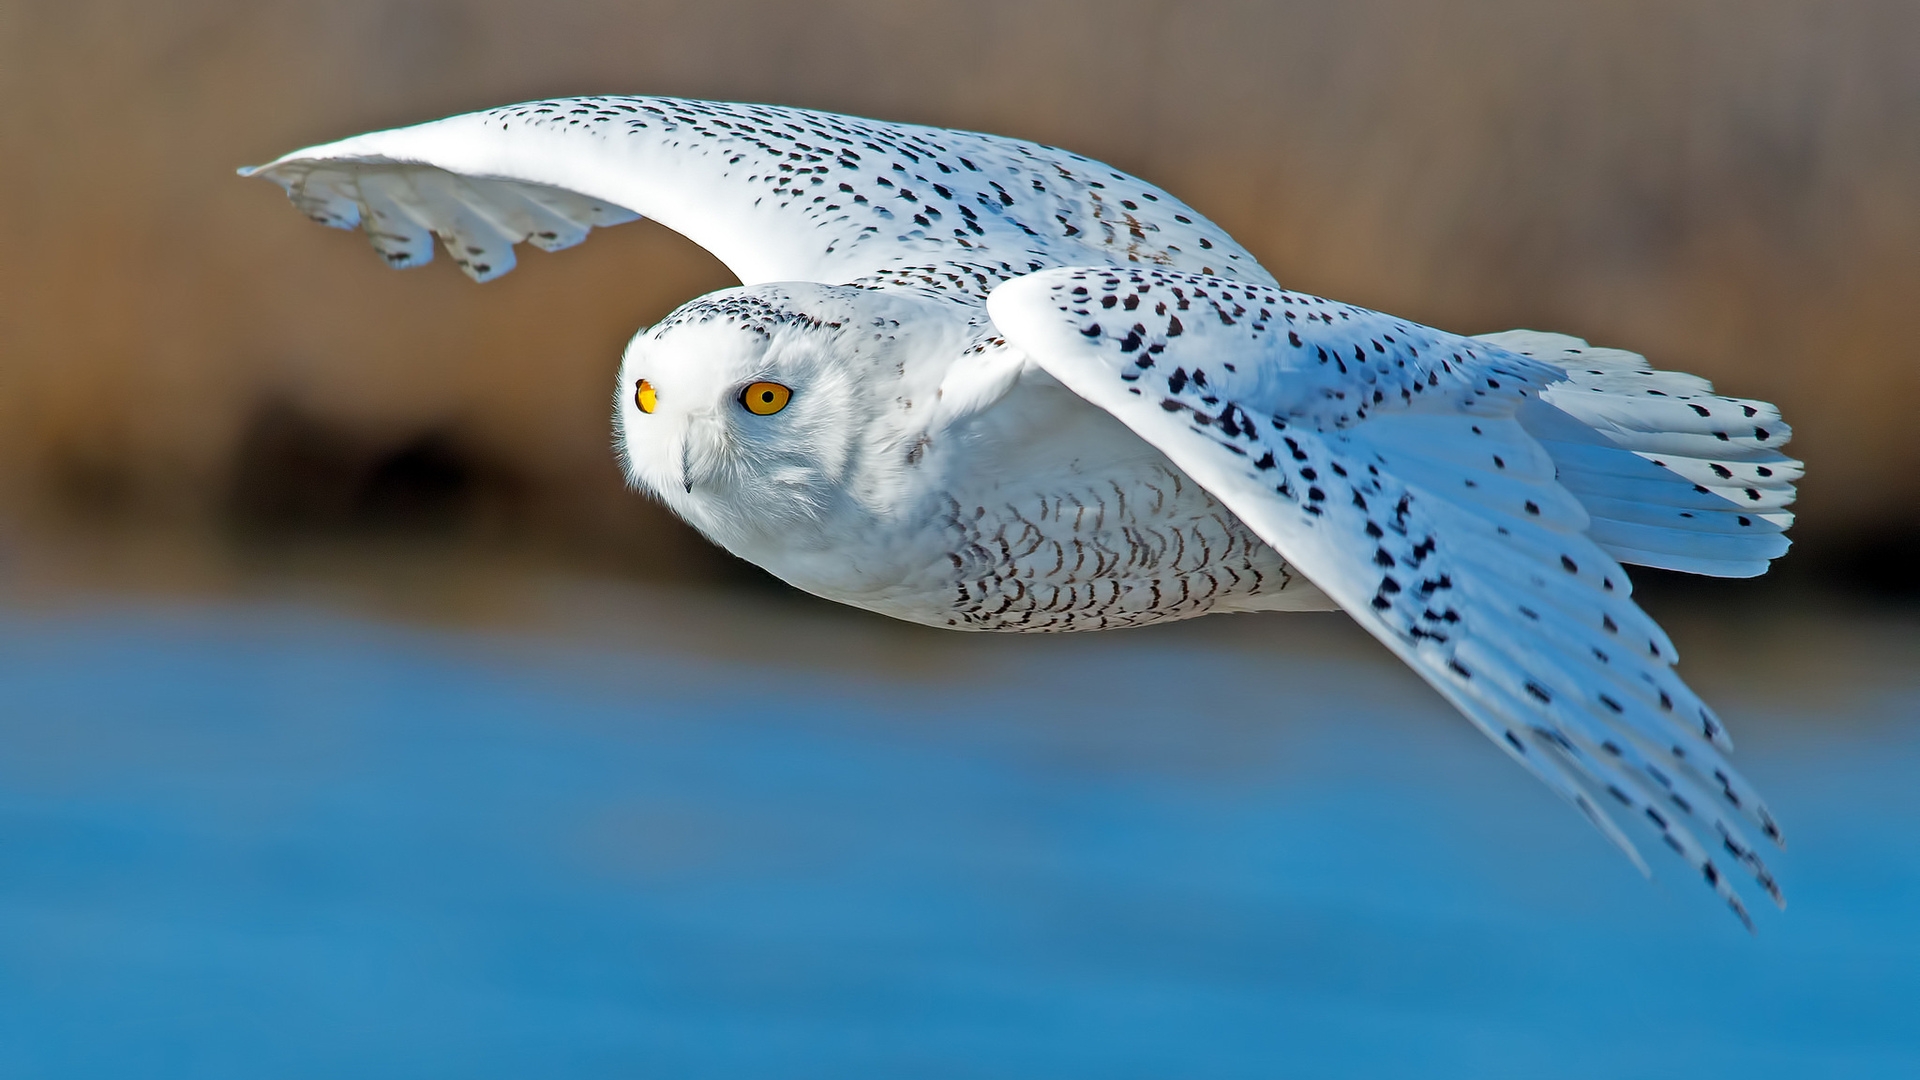 White Owl Flying for 1920 x 1080 HDTV 1080p resolution